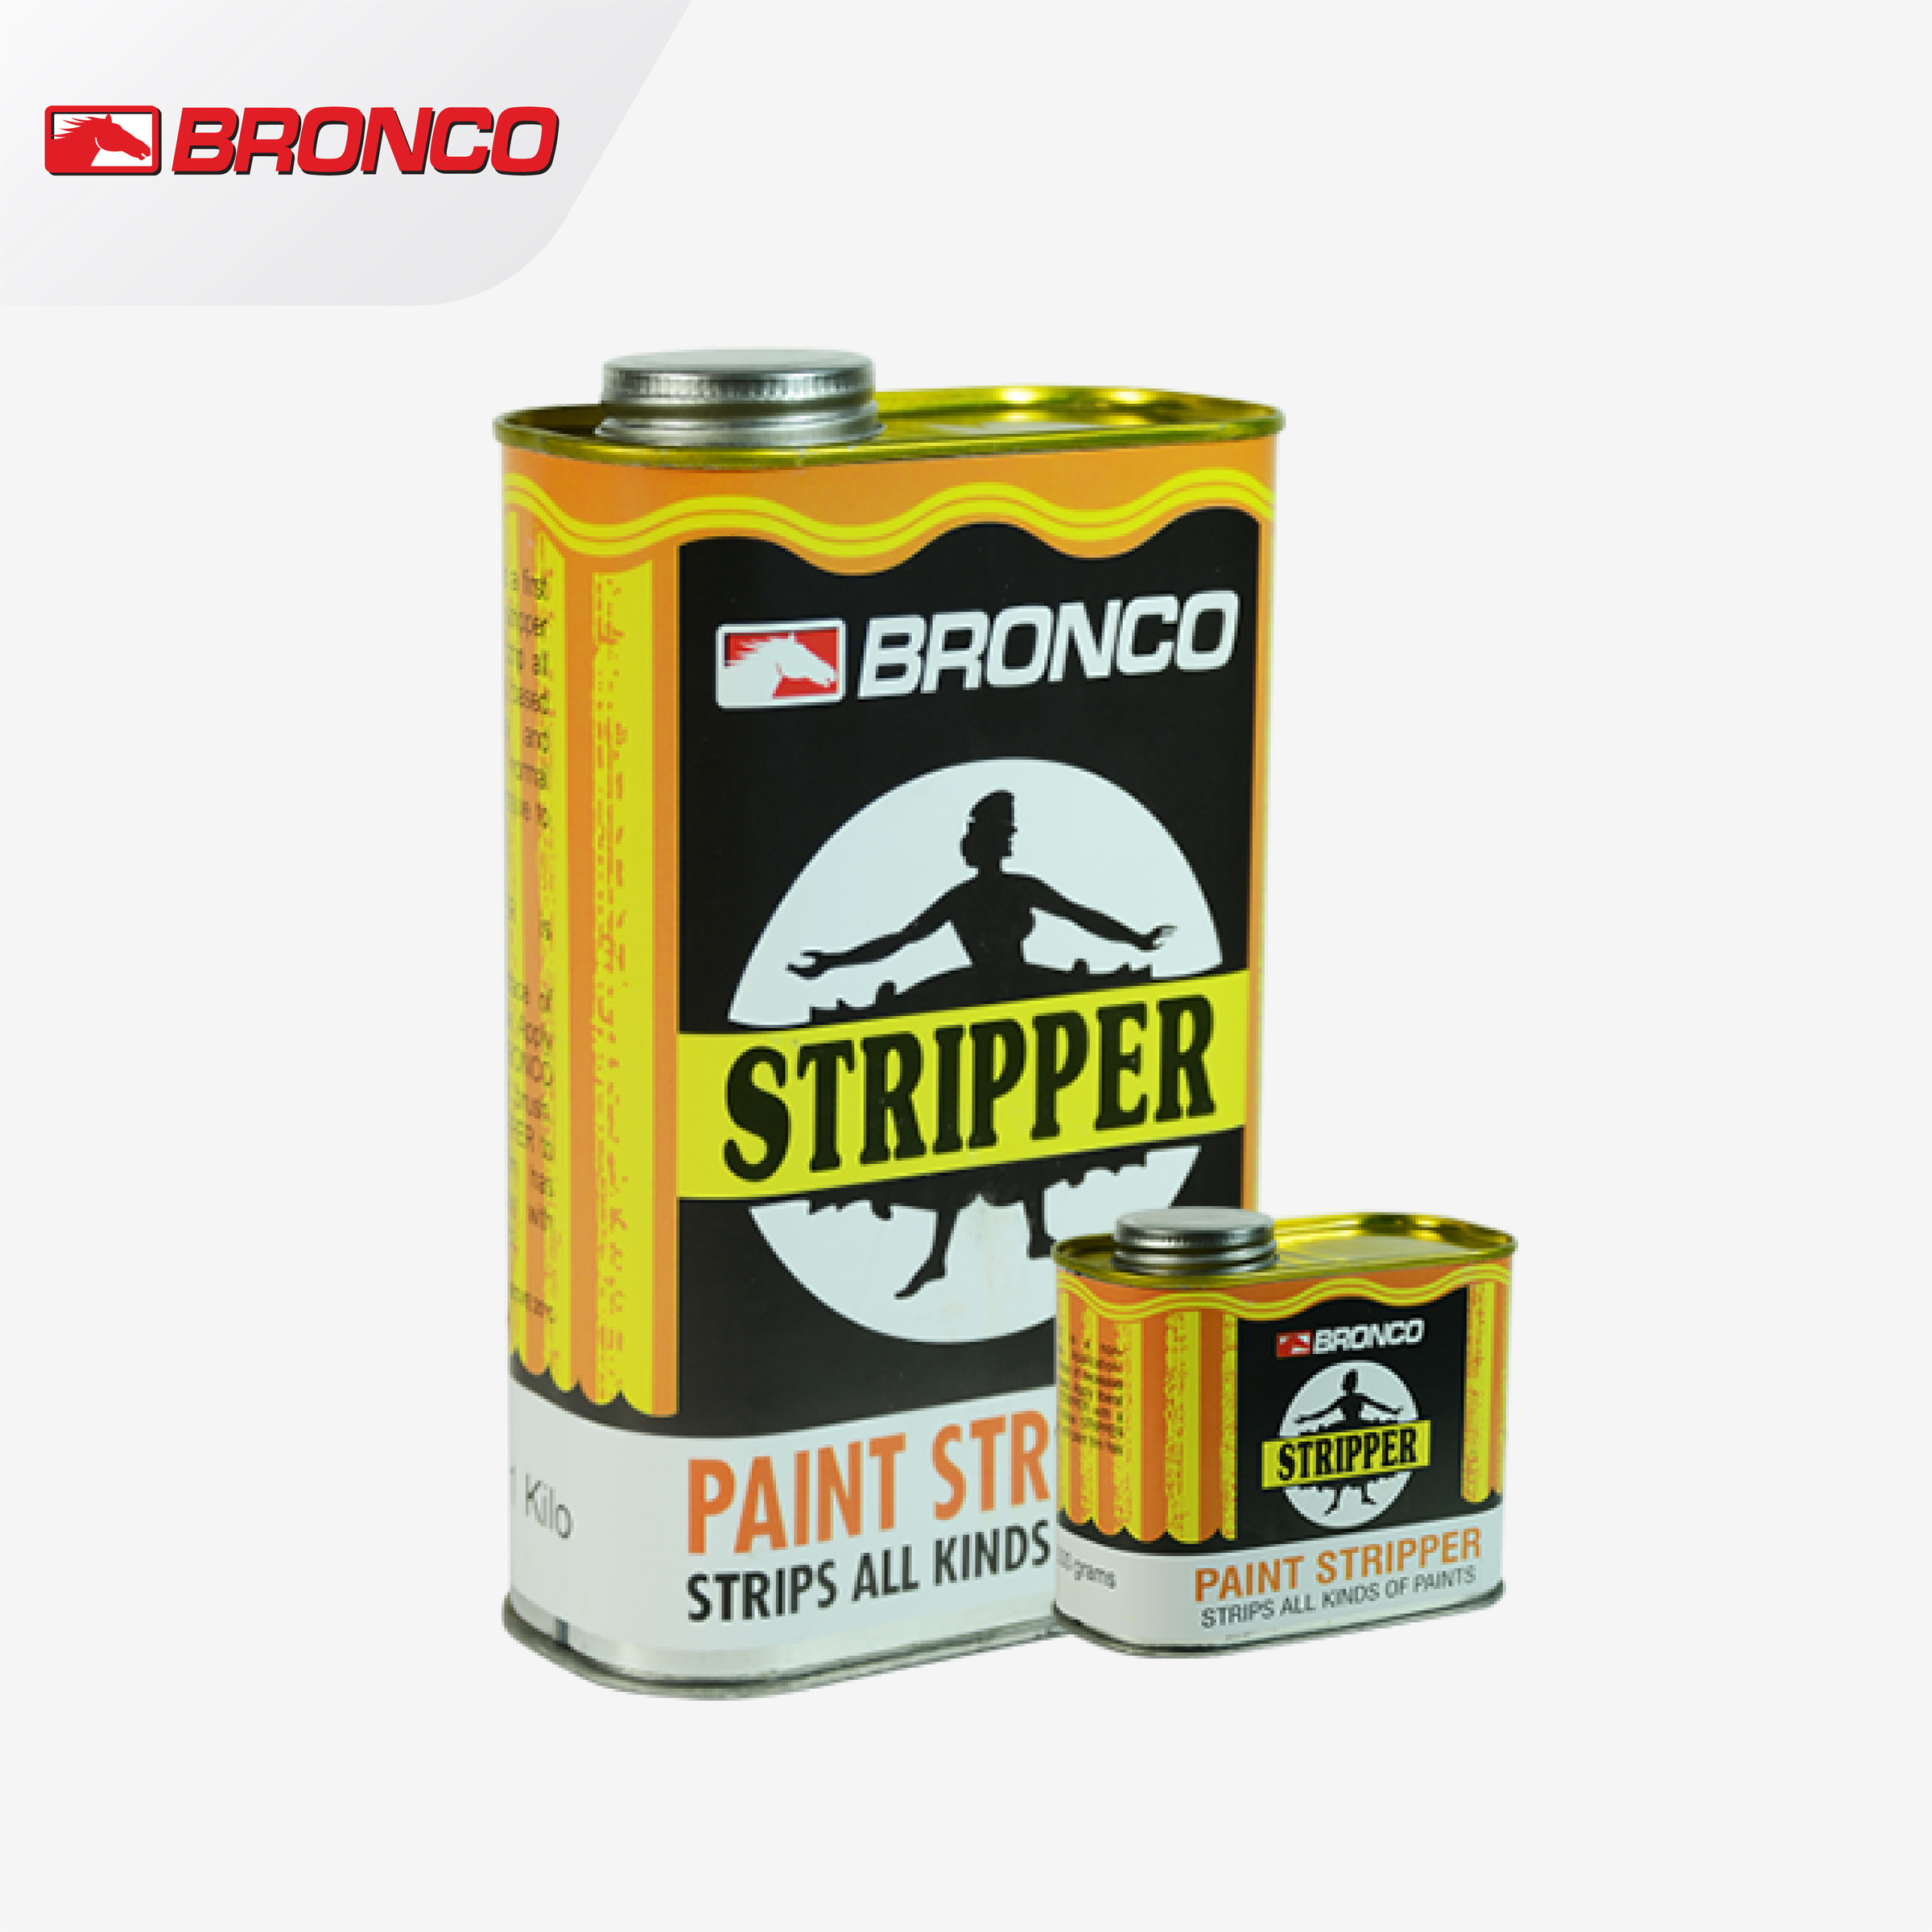 Bronco Paint Stripper